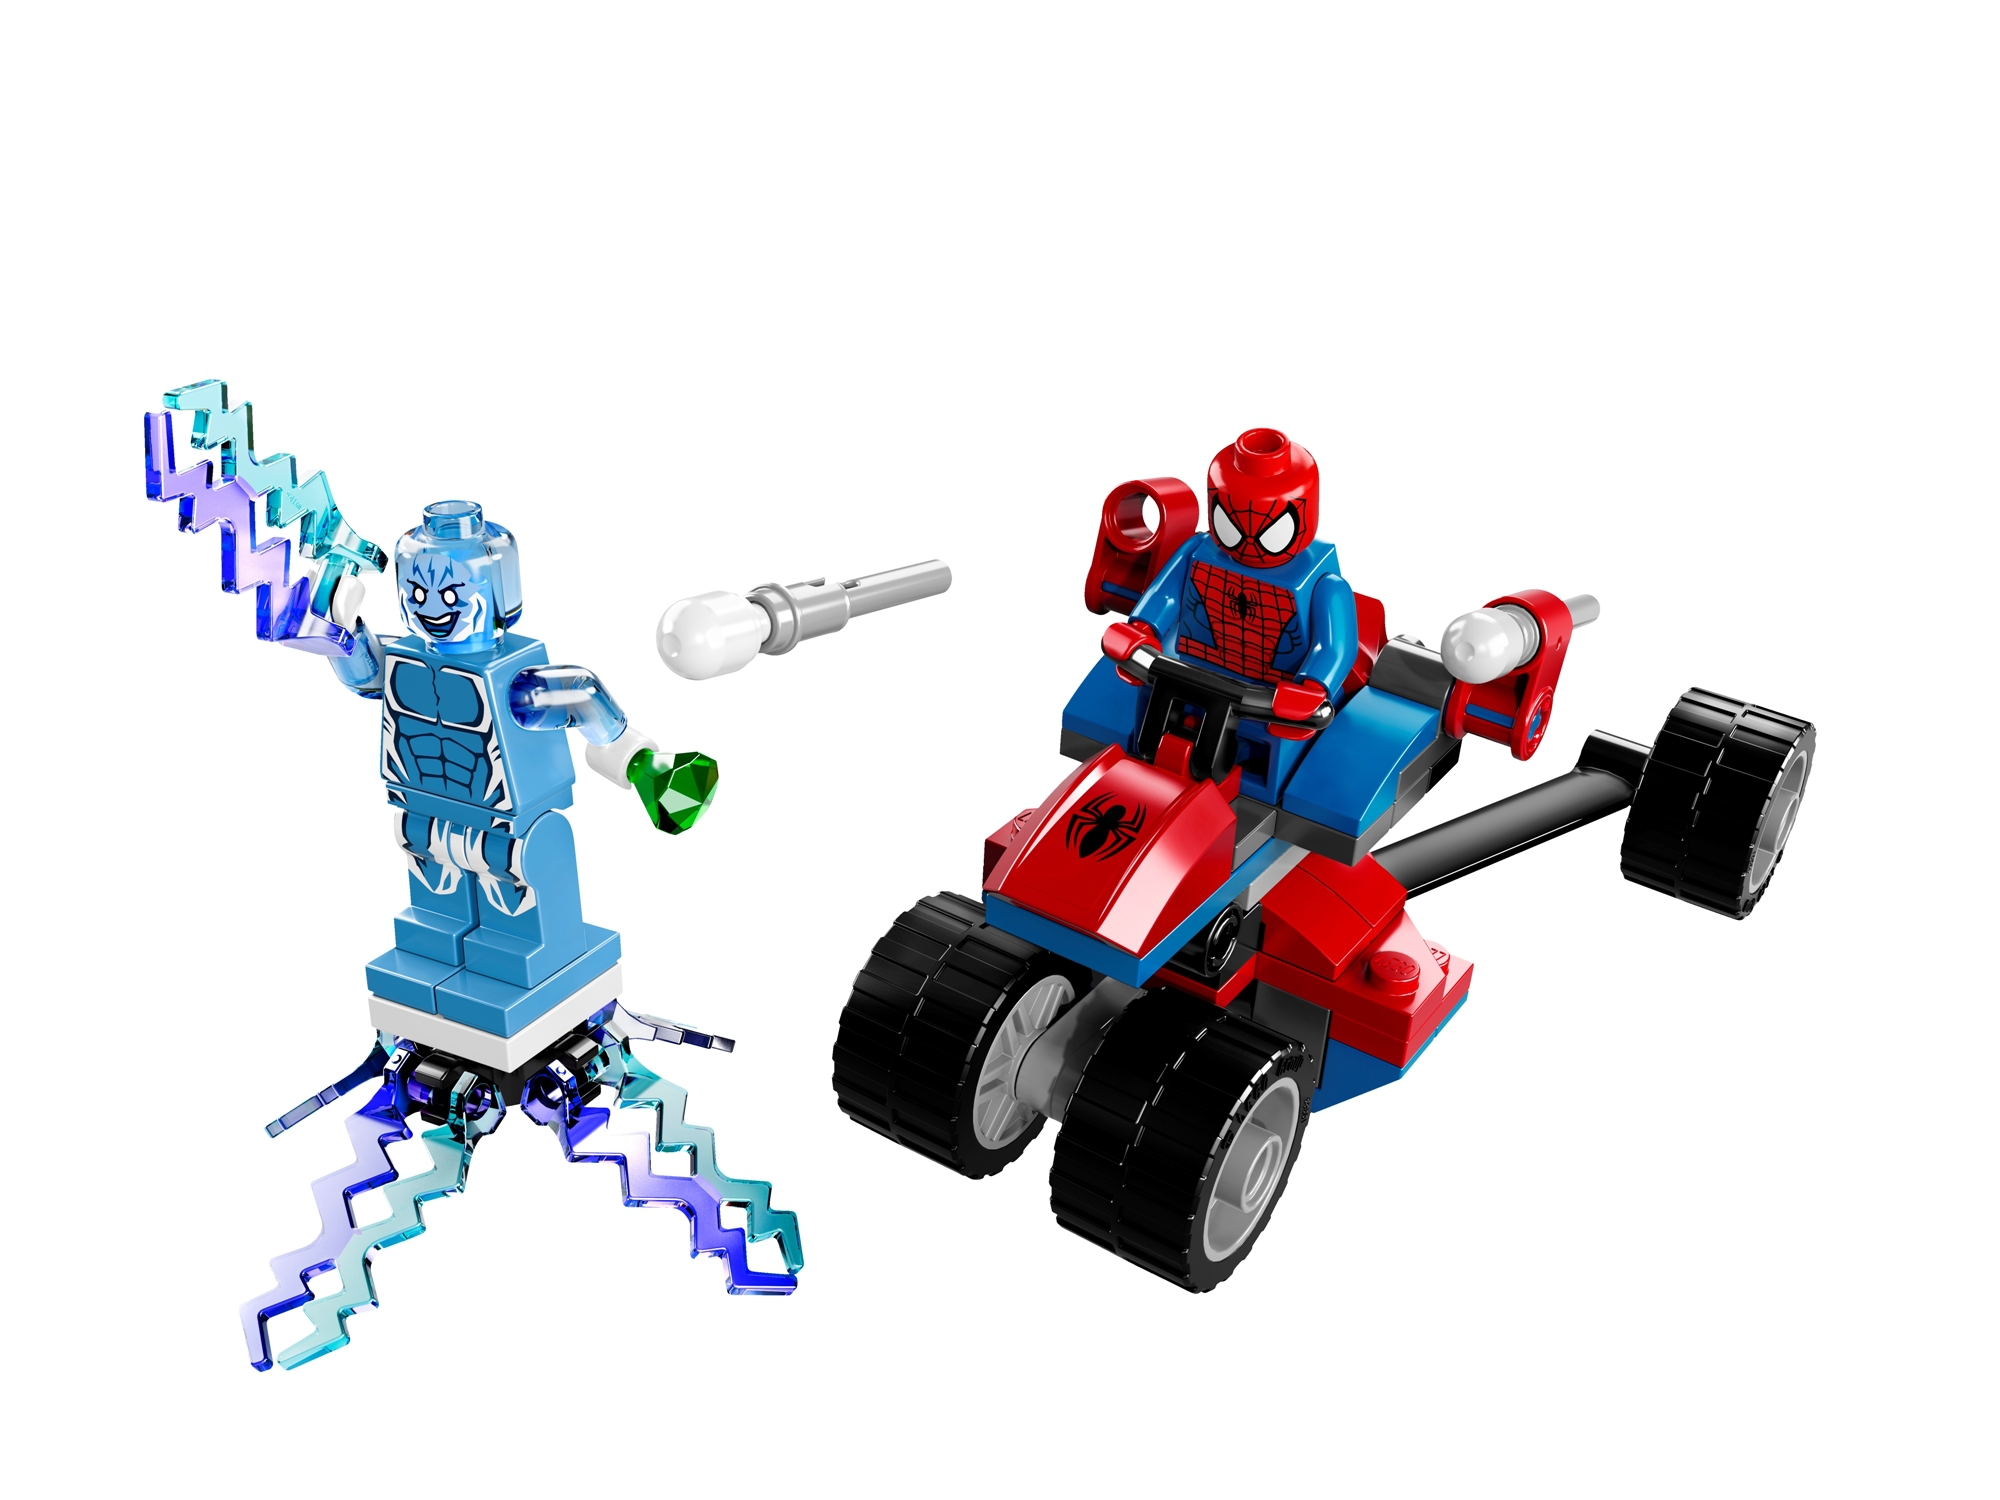 LEGO Marvel Super Hero Sets For 2014 Revealed - FBTB